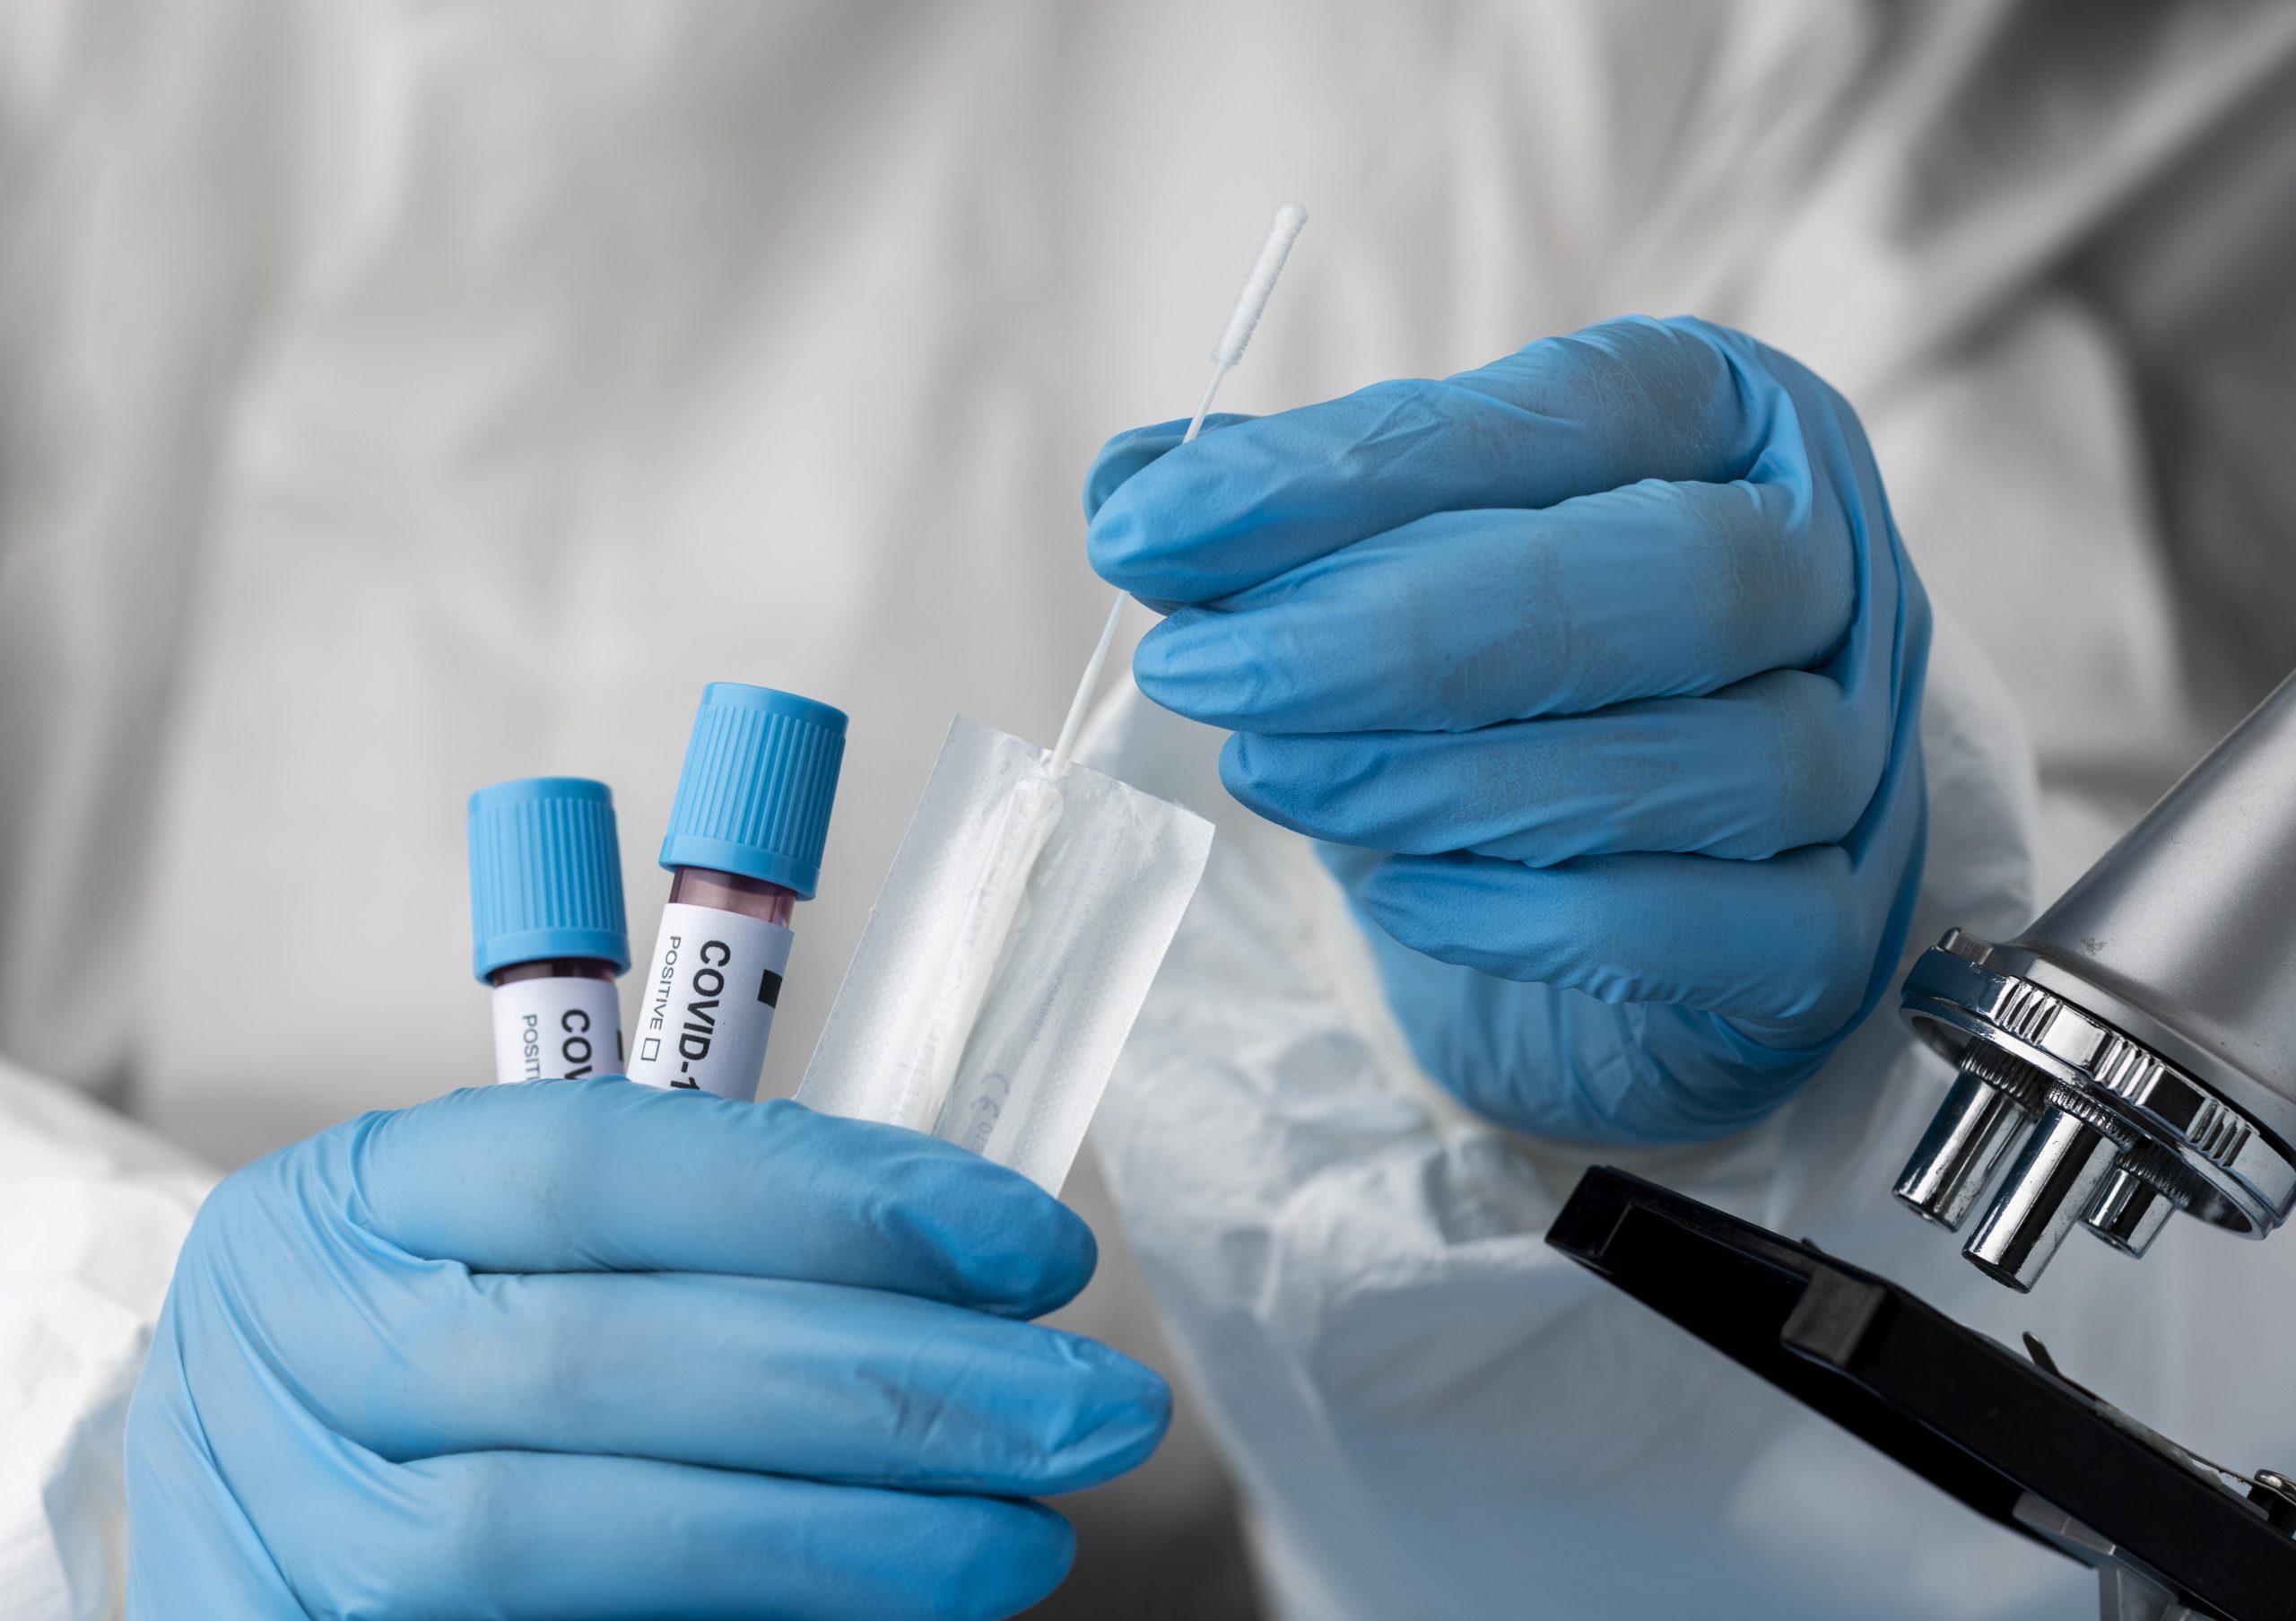 İşyerlerine Gelen  PCR Testi  Zorunluluğunun Hukuki Değerlendirmesi